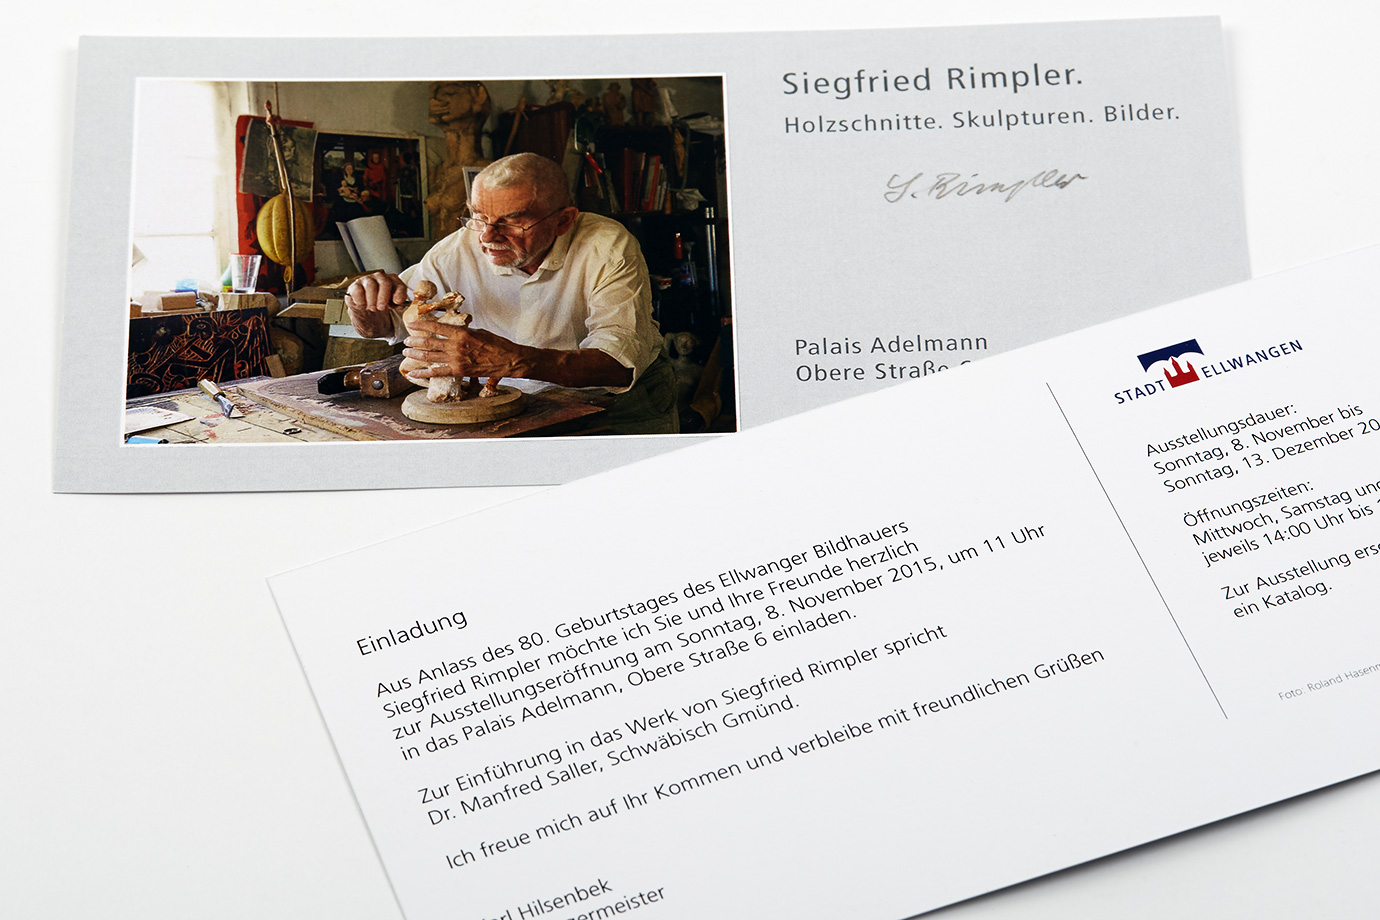 Einladung Siegfried Rimpler